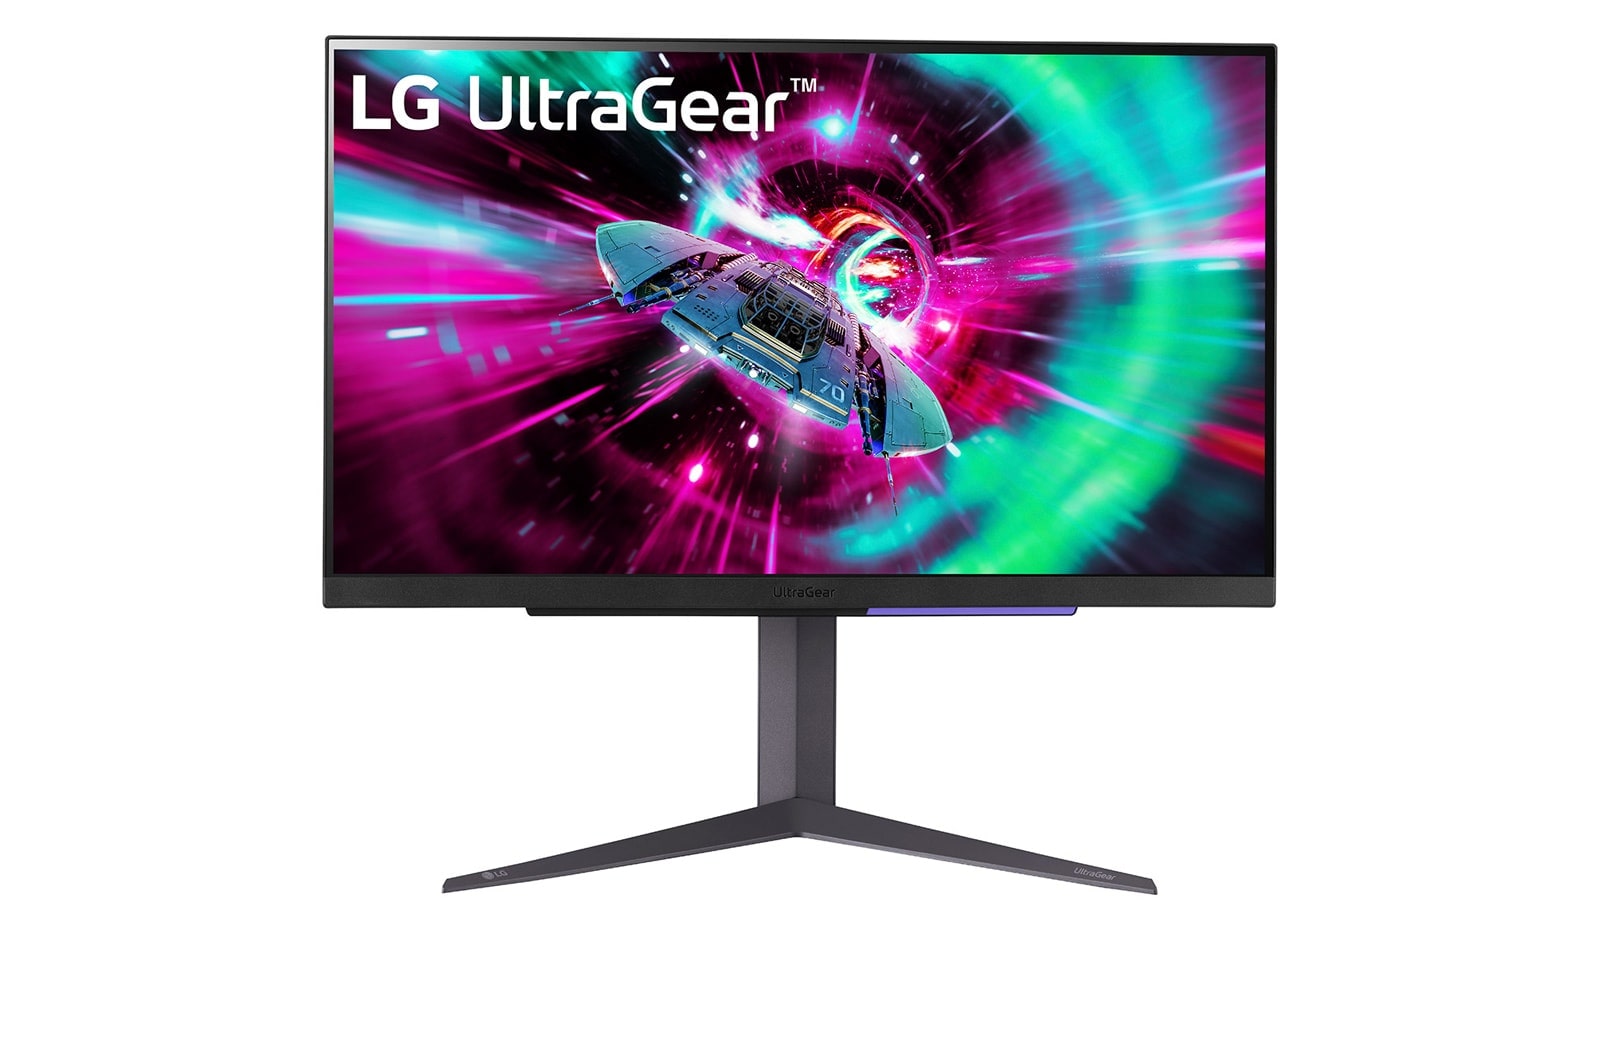 LG 27” UltraGear™ UHD Gaming Monitor with 144Hz Refresh Rate, 27GR93U-B